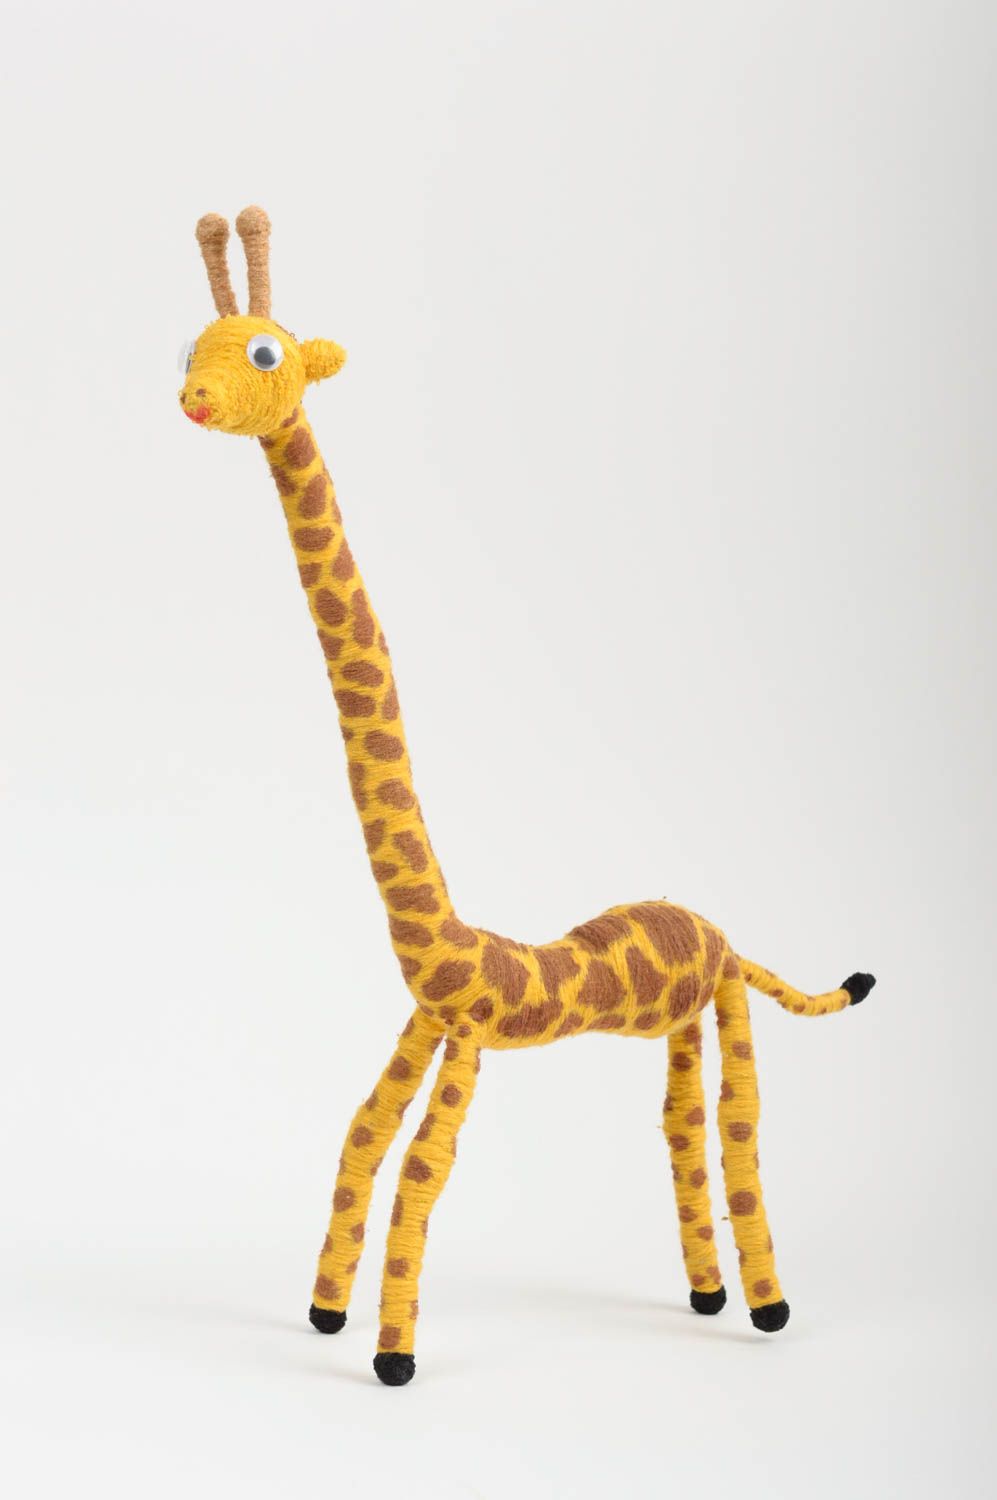 Мягкая игрушка ручной работы детская игрушка в виде жирафа подарок ребенку фото 1